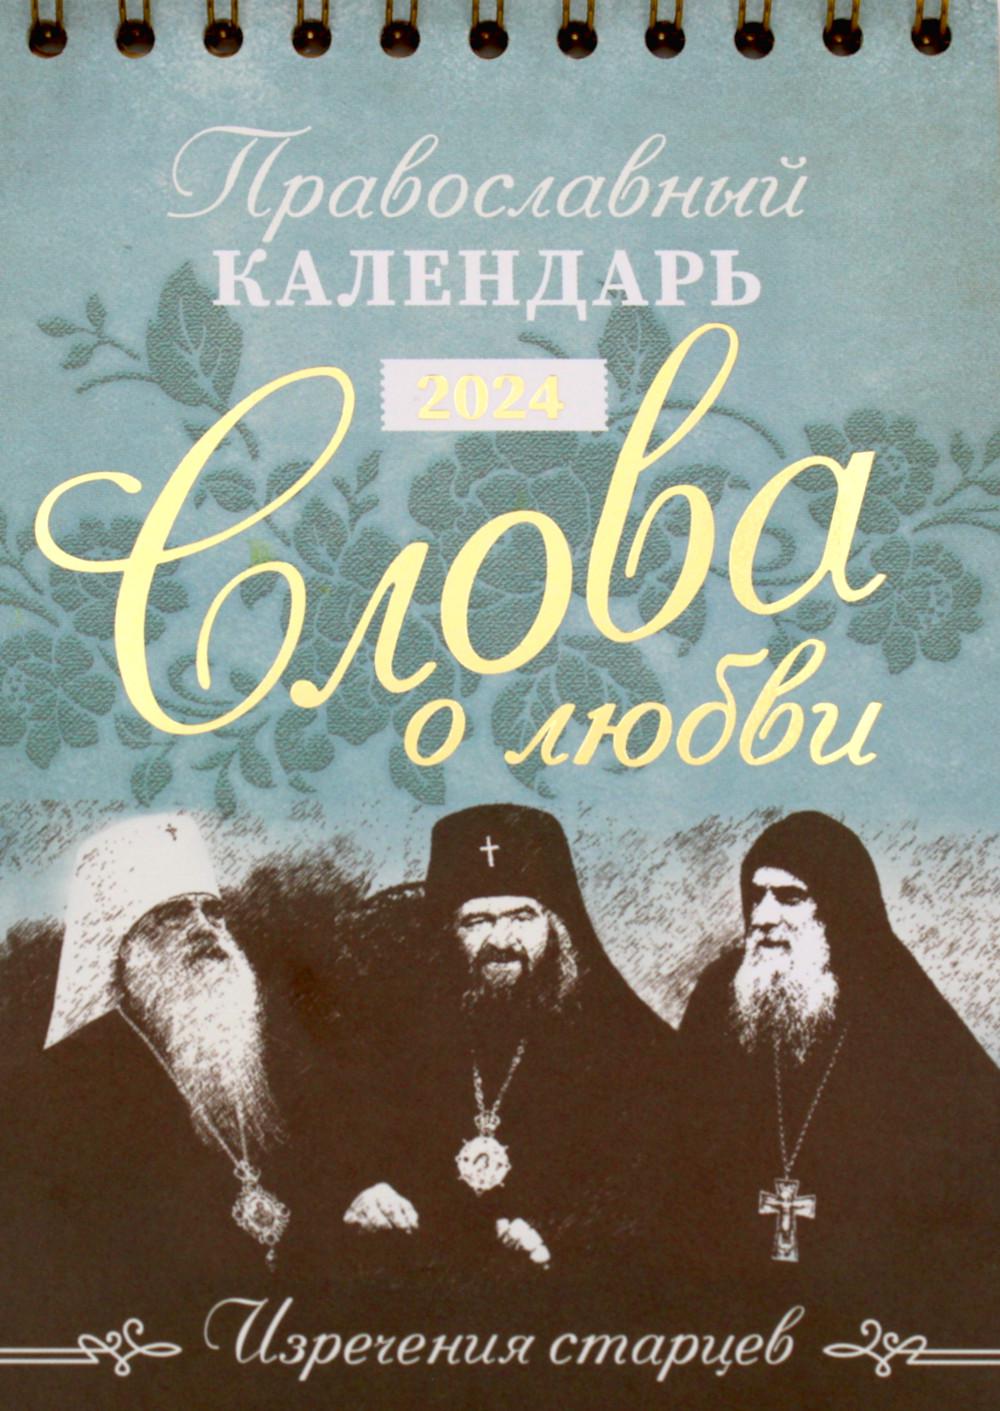 Календарь Слова о любви. Изречения старцев. Православный календарь на 2024 год